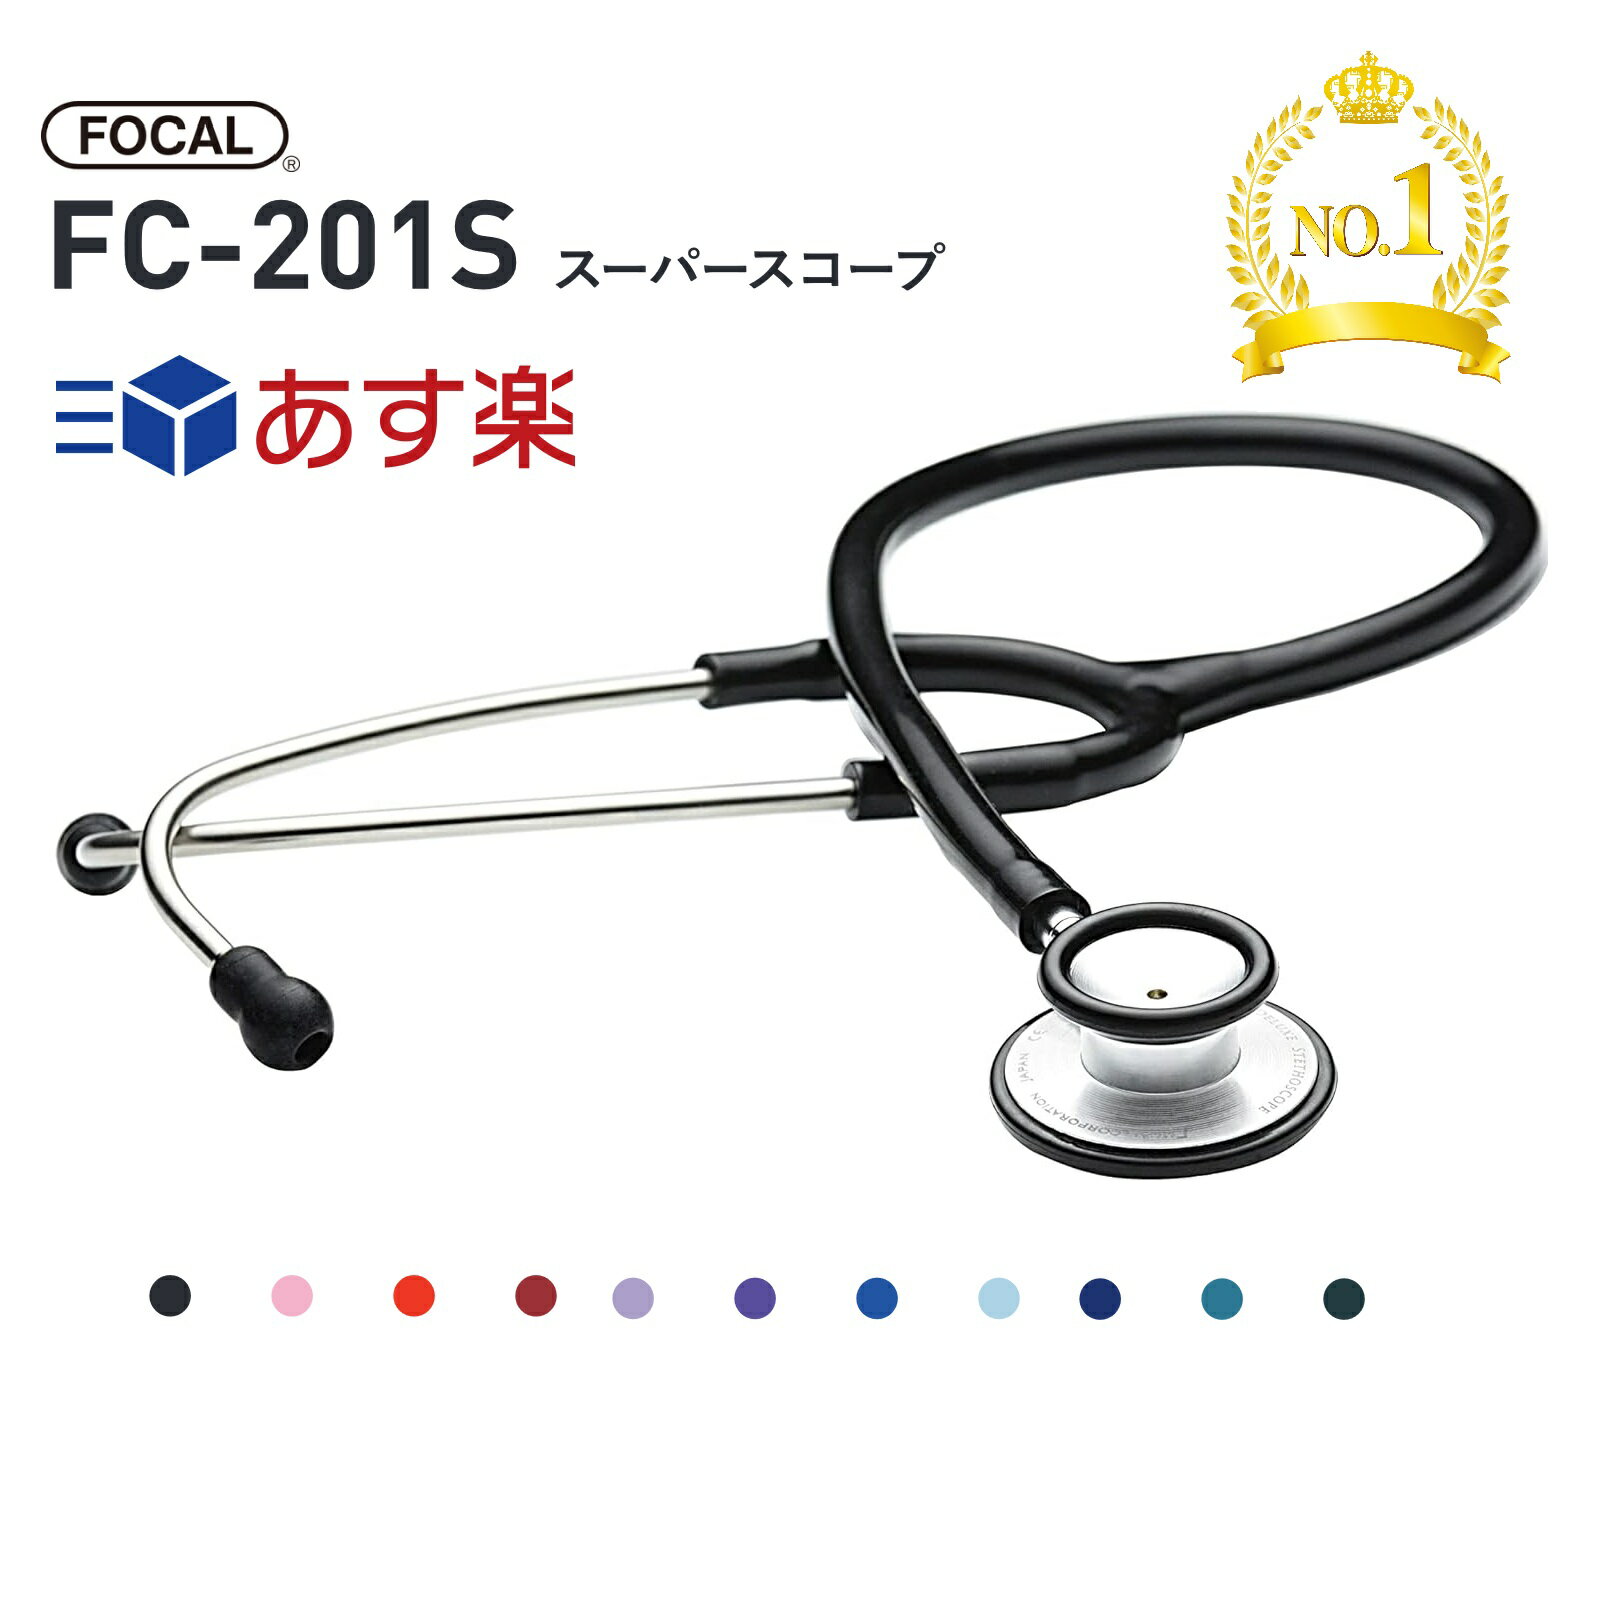 【あす楽】FOCAL フォーカル スーパースコープ FC-201S 10色 <strong>聴診器</strong> 内バネ式 ダブルタイプ 看護 医療